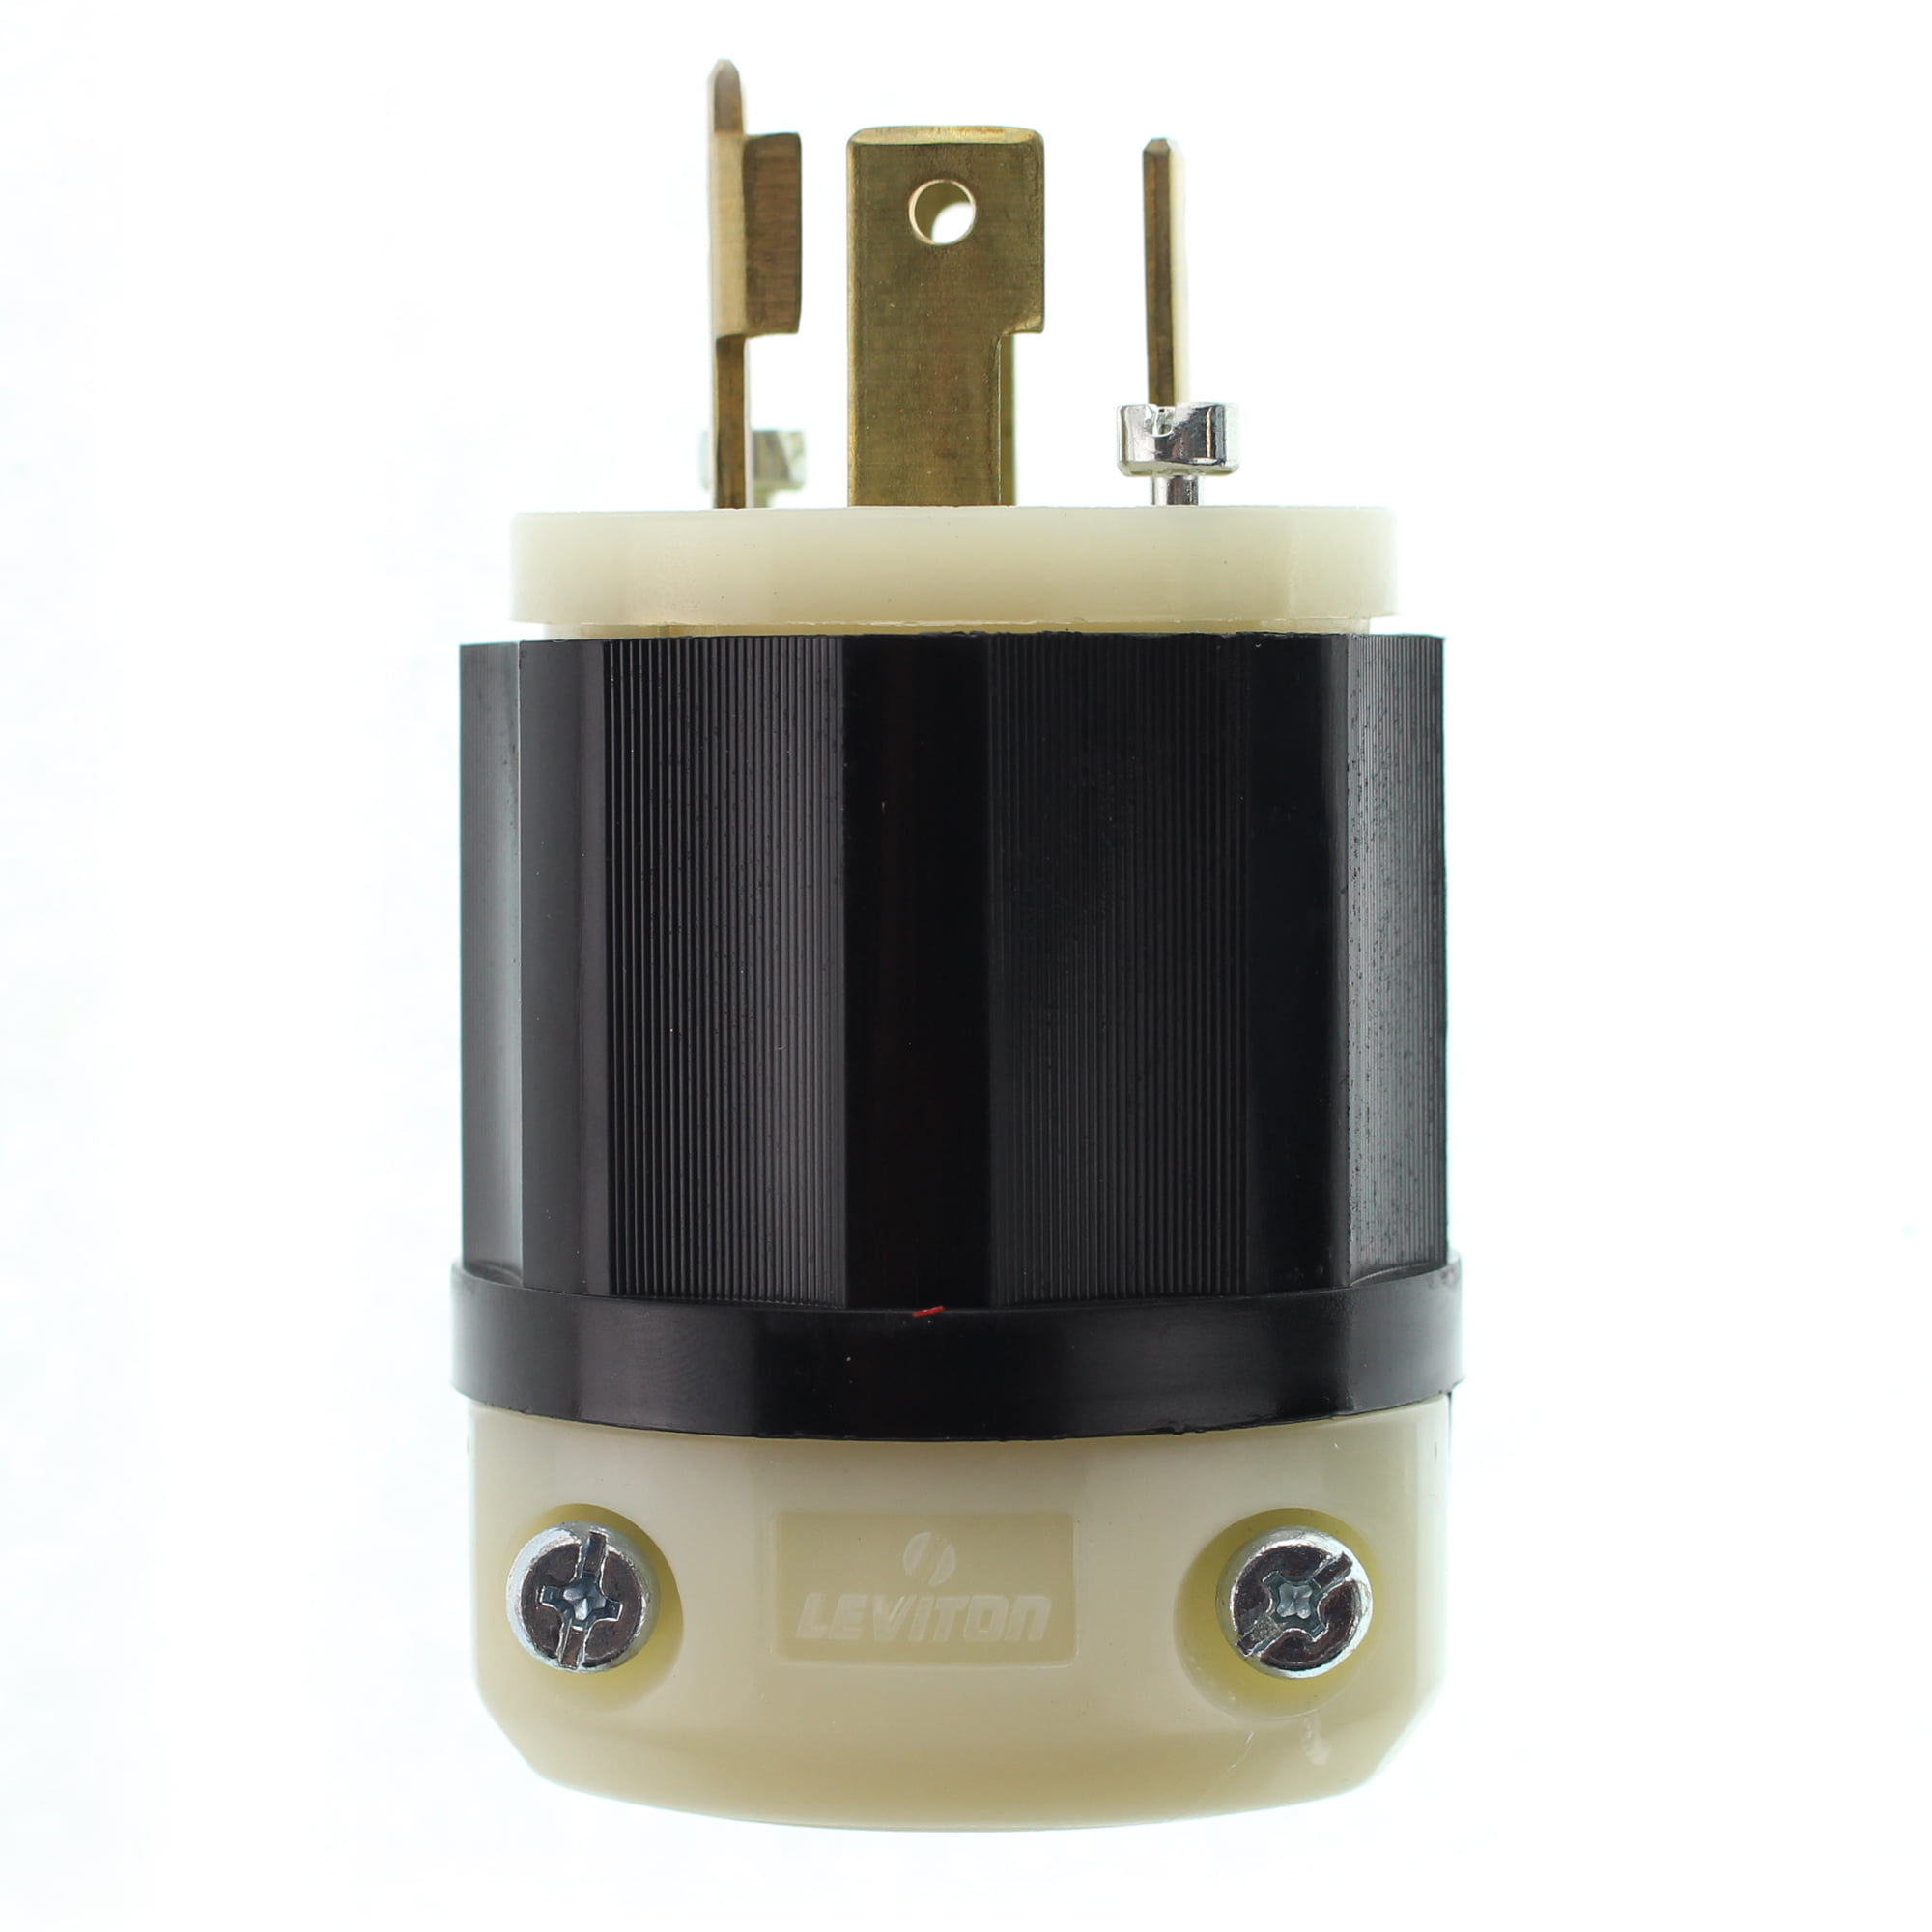 Leviton 2731 30 Amp 480 Volt 3-phase NEMA L16-30P 3P 4W Locking Plug Industrial 